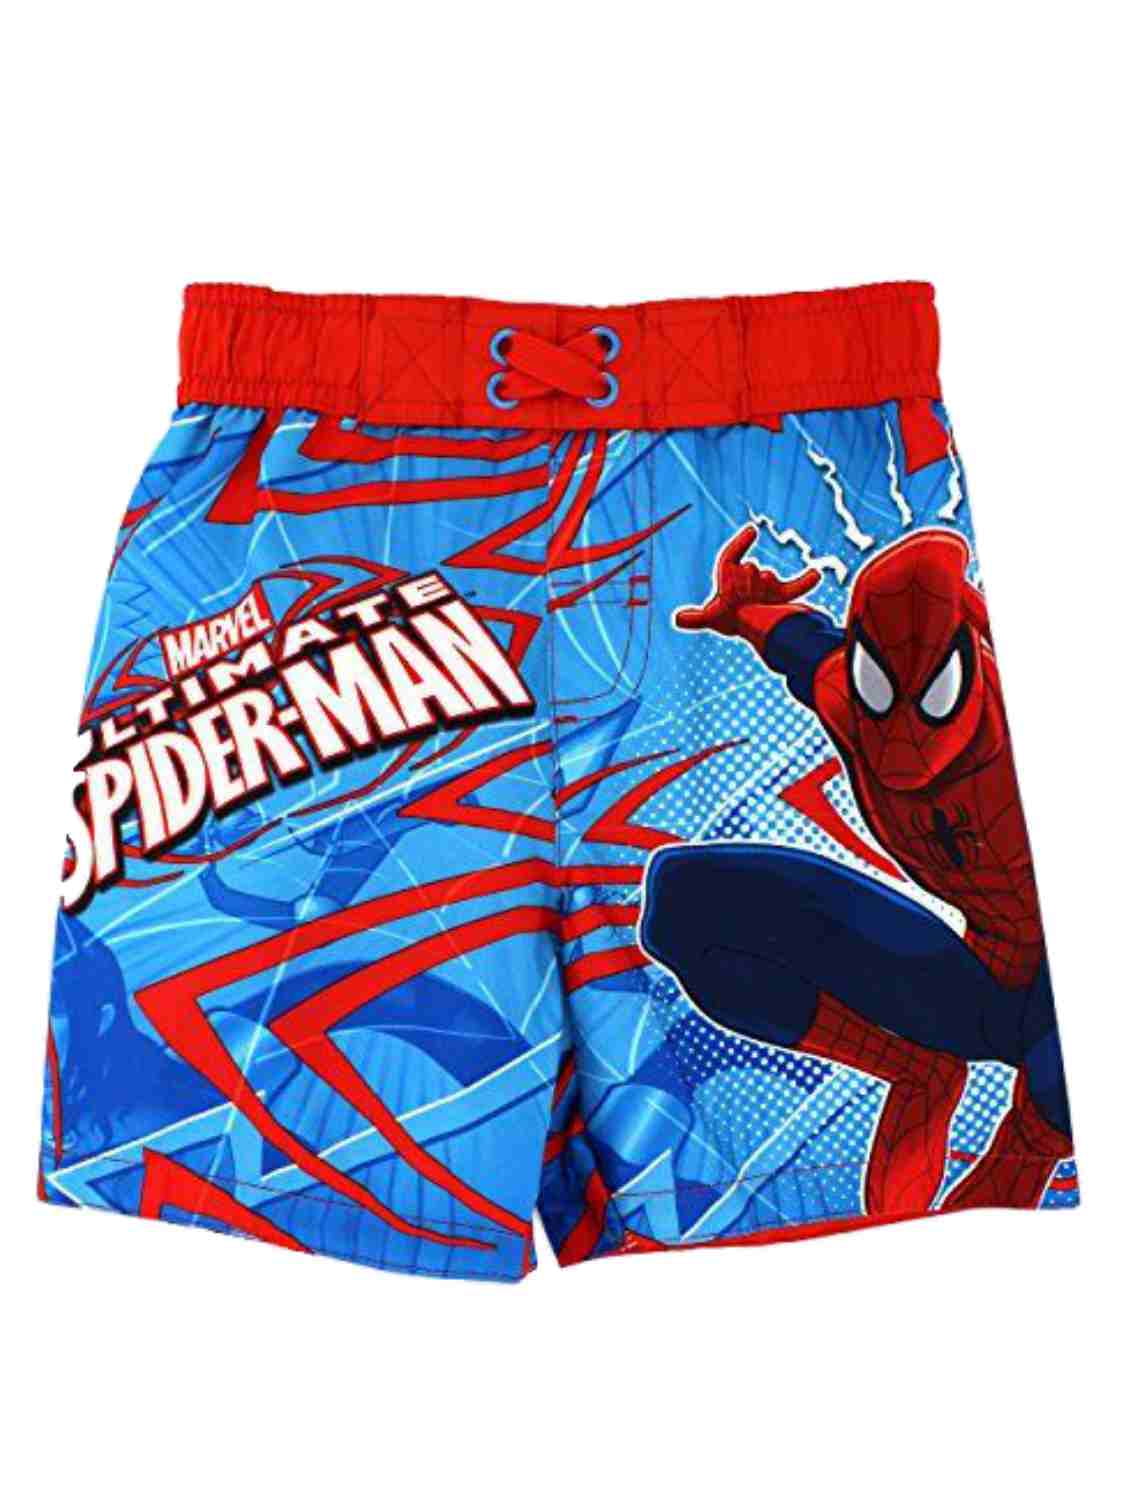 SPIDERMAN Toddler Boys 2 3 2T 3T Bathing Suit Swim Trunks Shorts Bottoms Marvel 